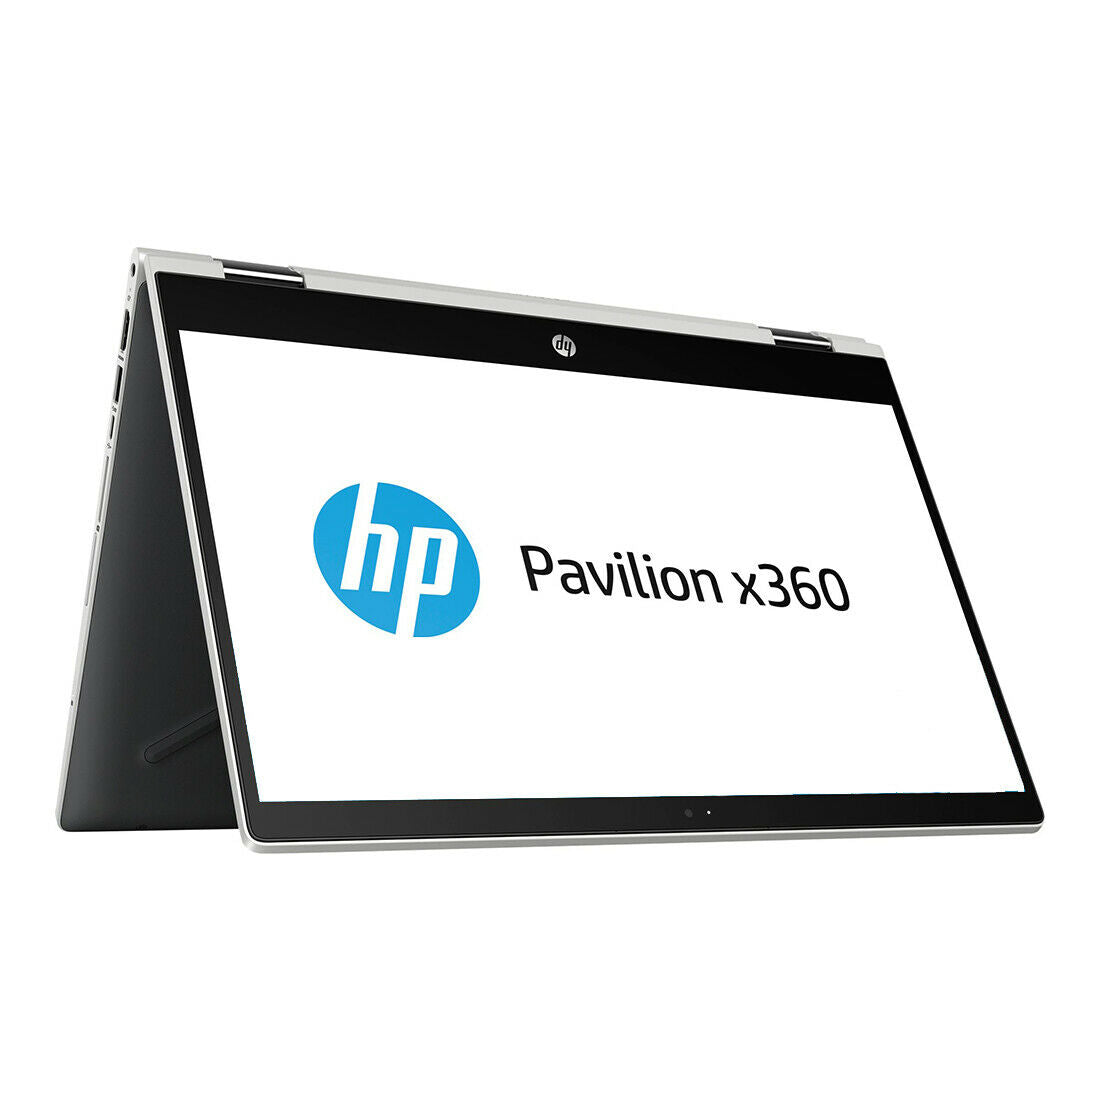 HP Pavilion x360 14" Laptop AMD E2-9000e 1.5GHz 4GB/128GB 14M-CD0001DX, Silver